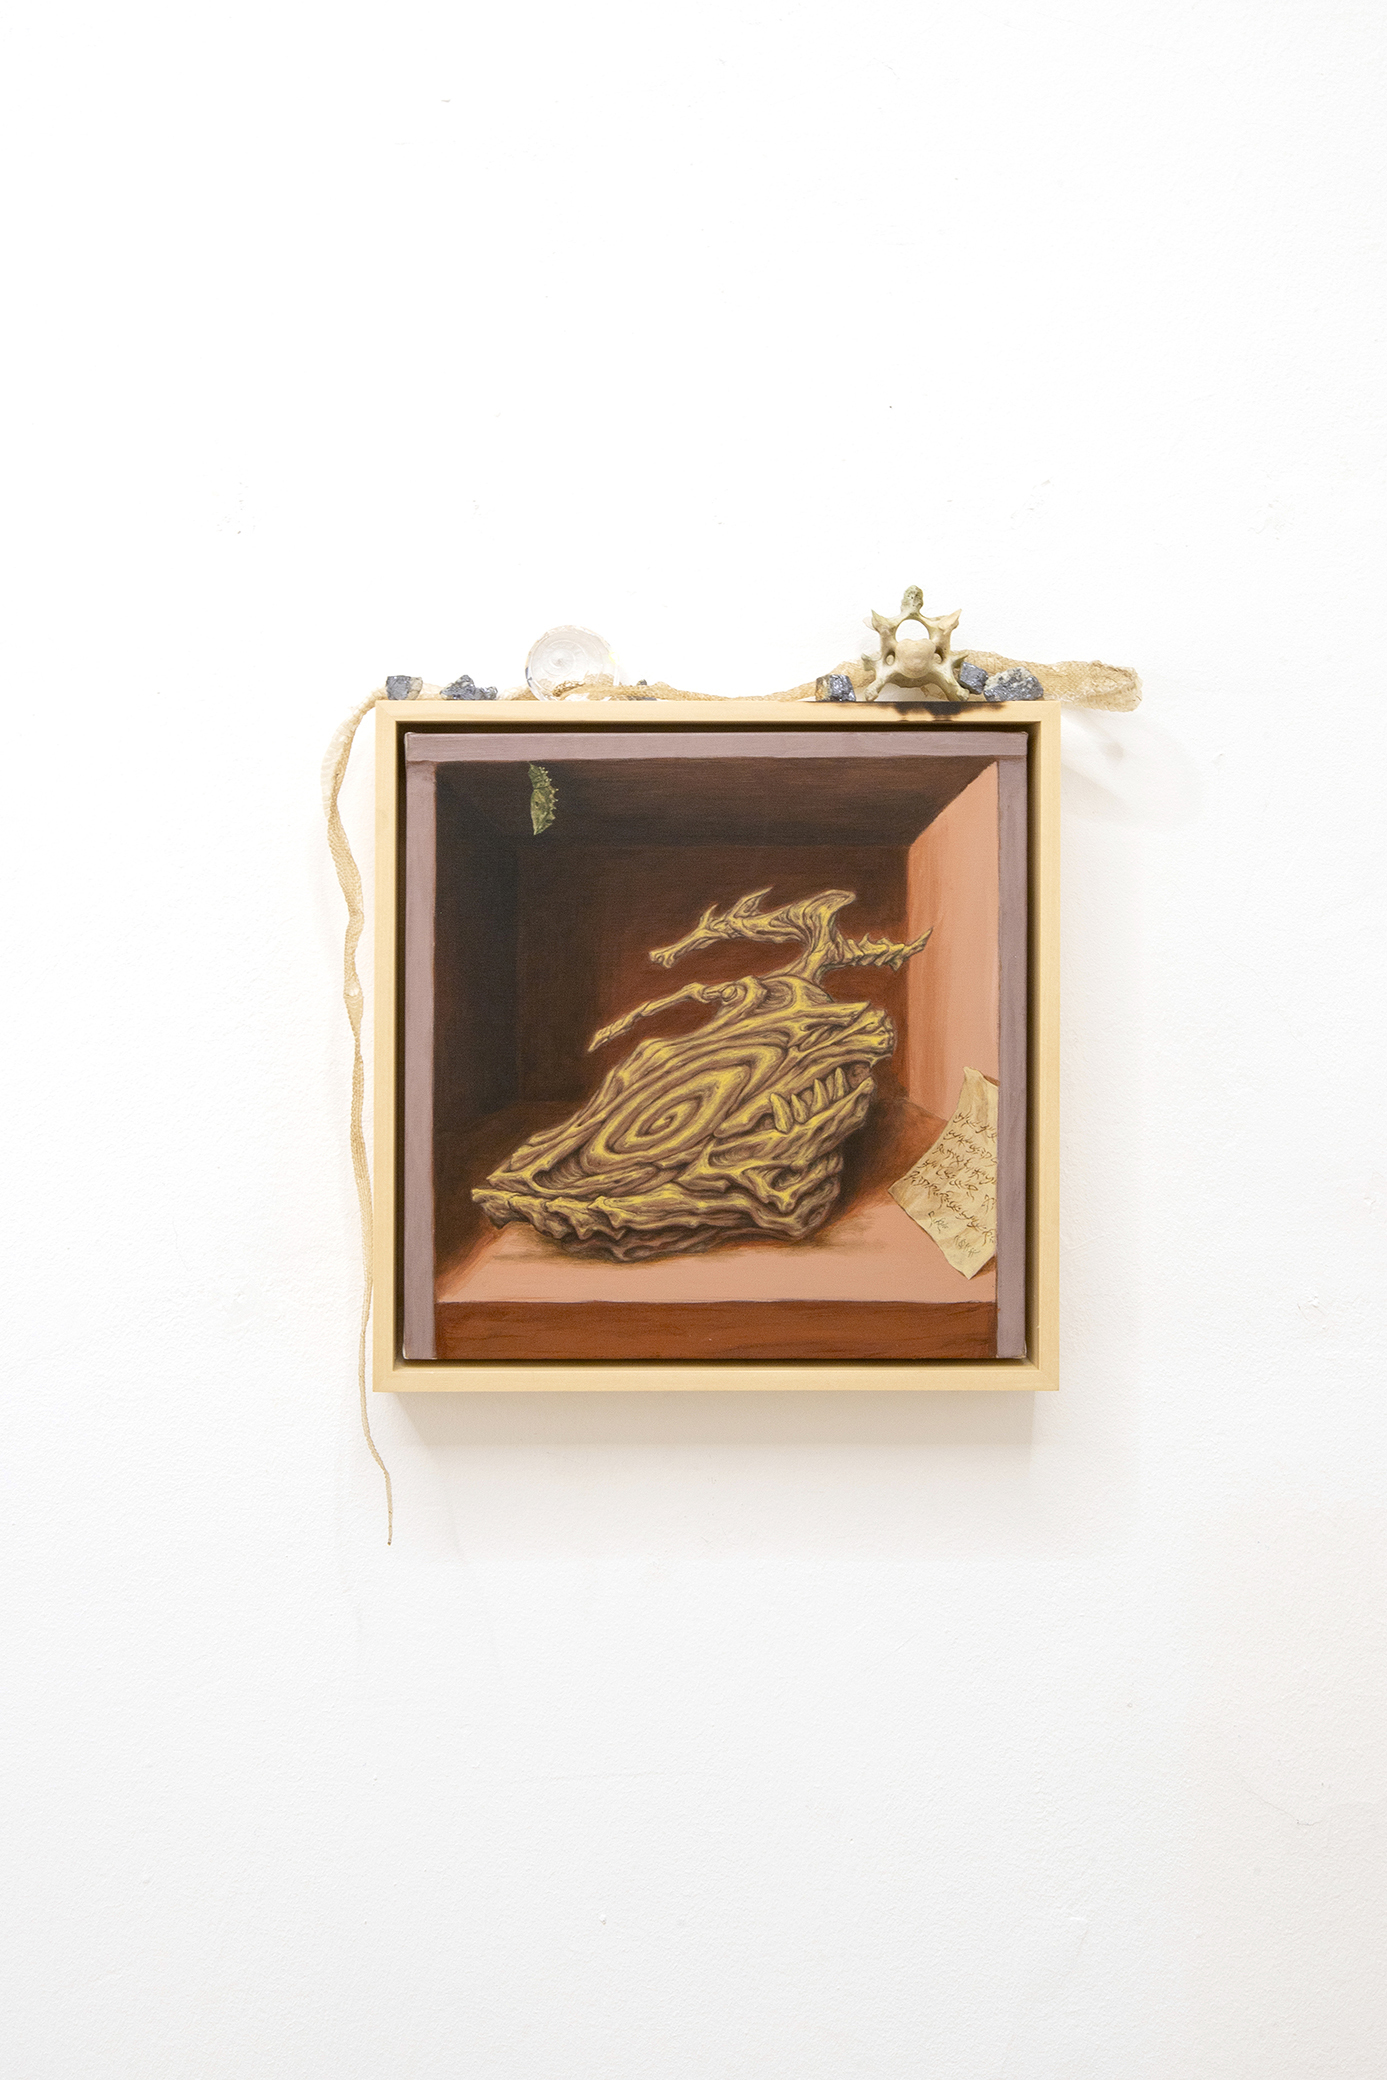 Giuseppe Salis, Vanitas con crisalide, acrylic on canvas, 30x30 cm, 2023